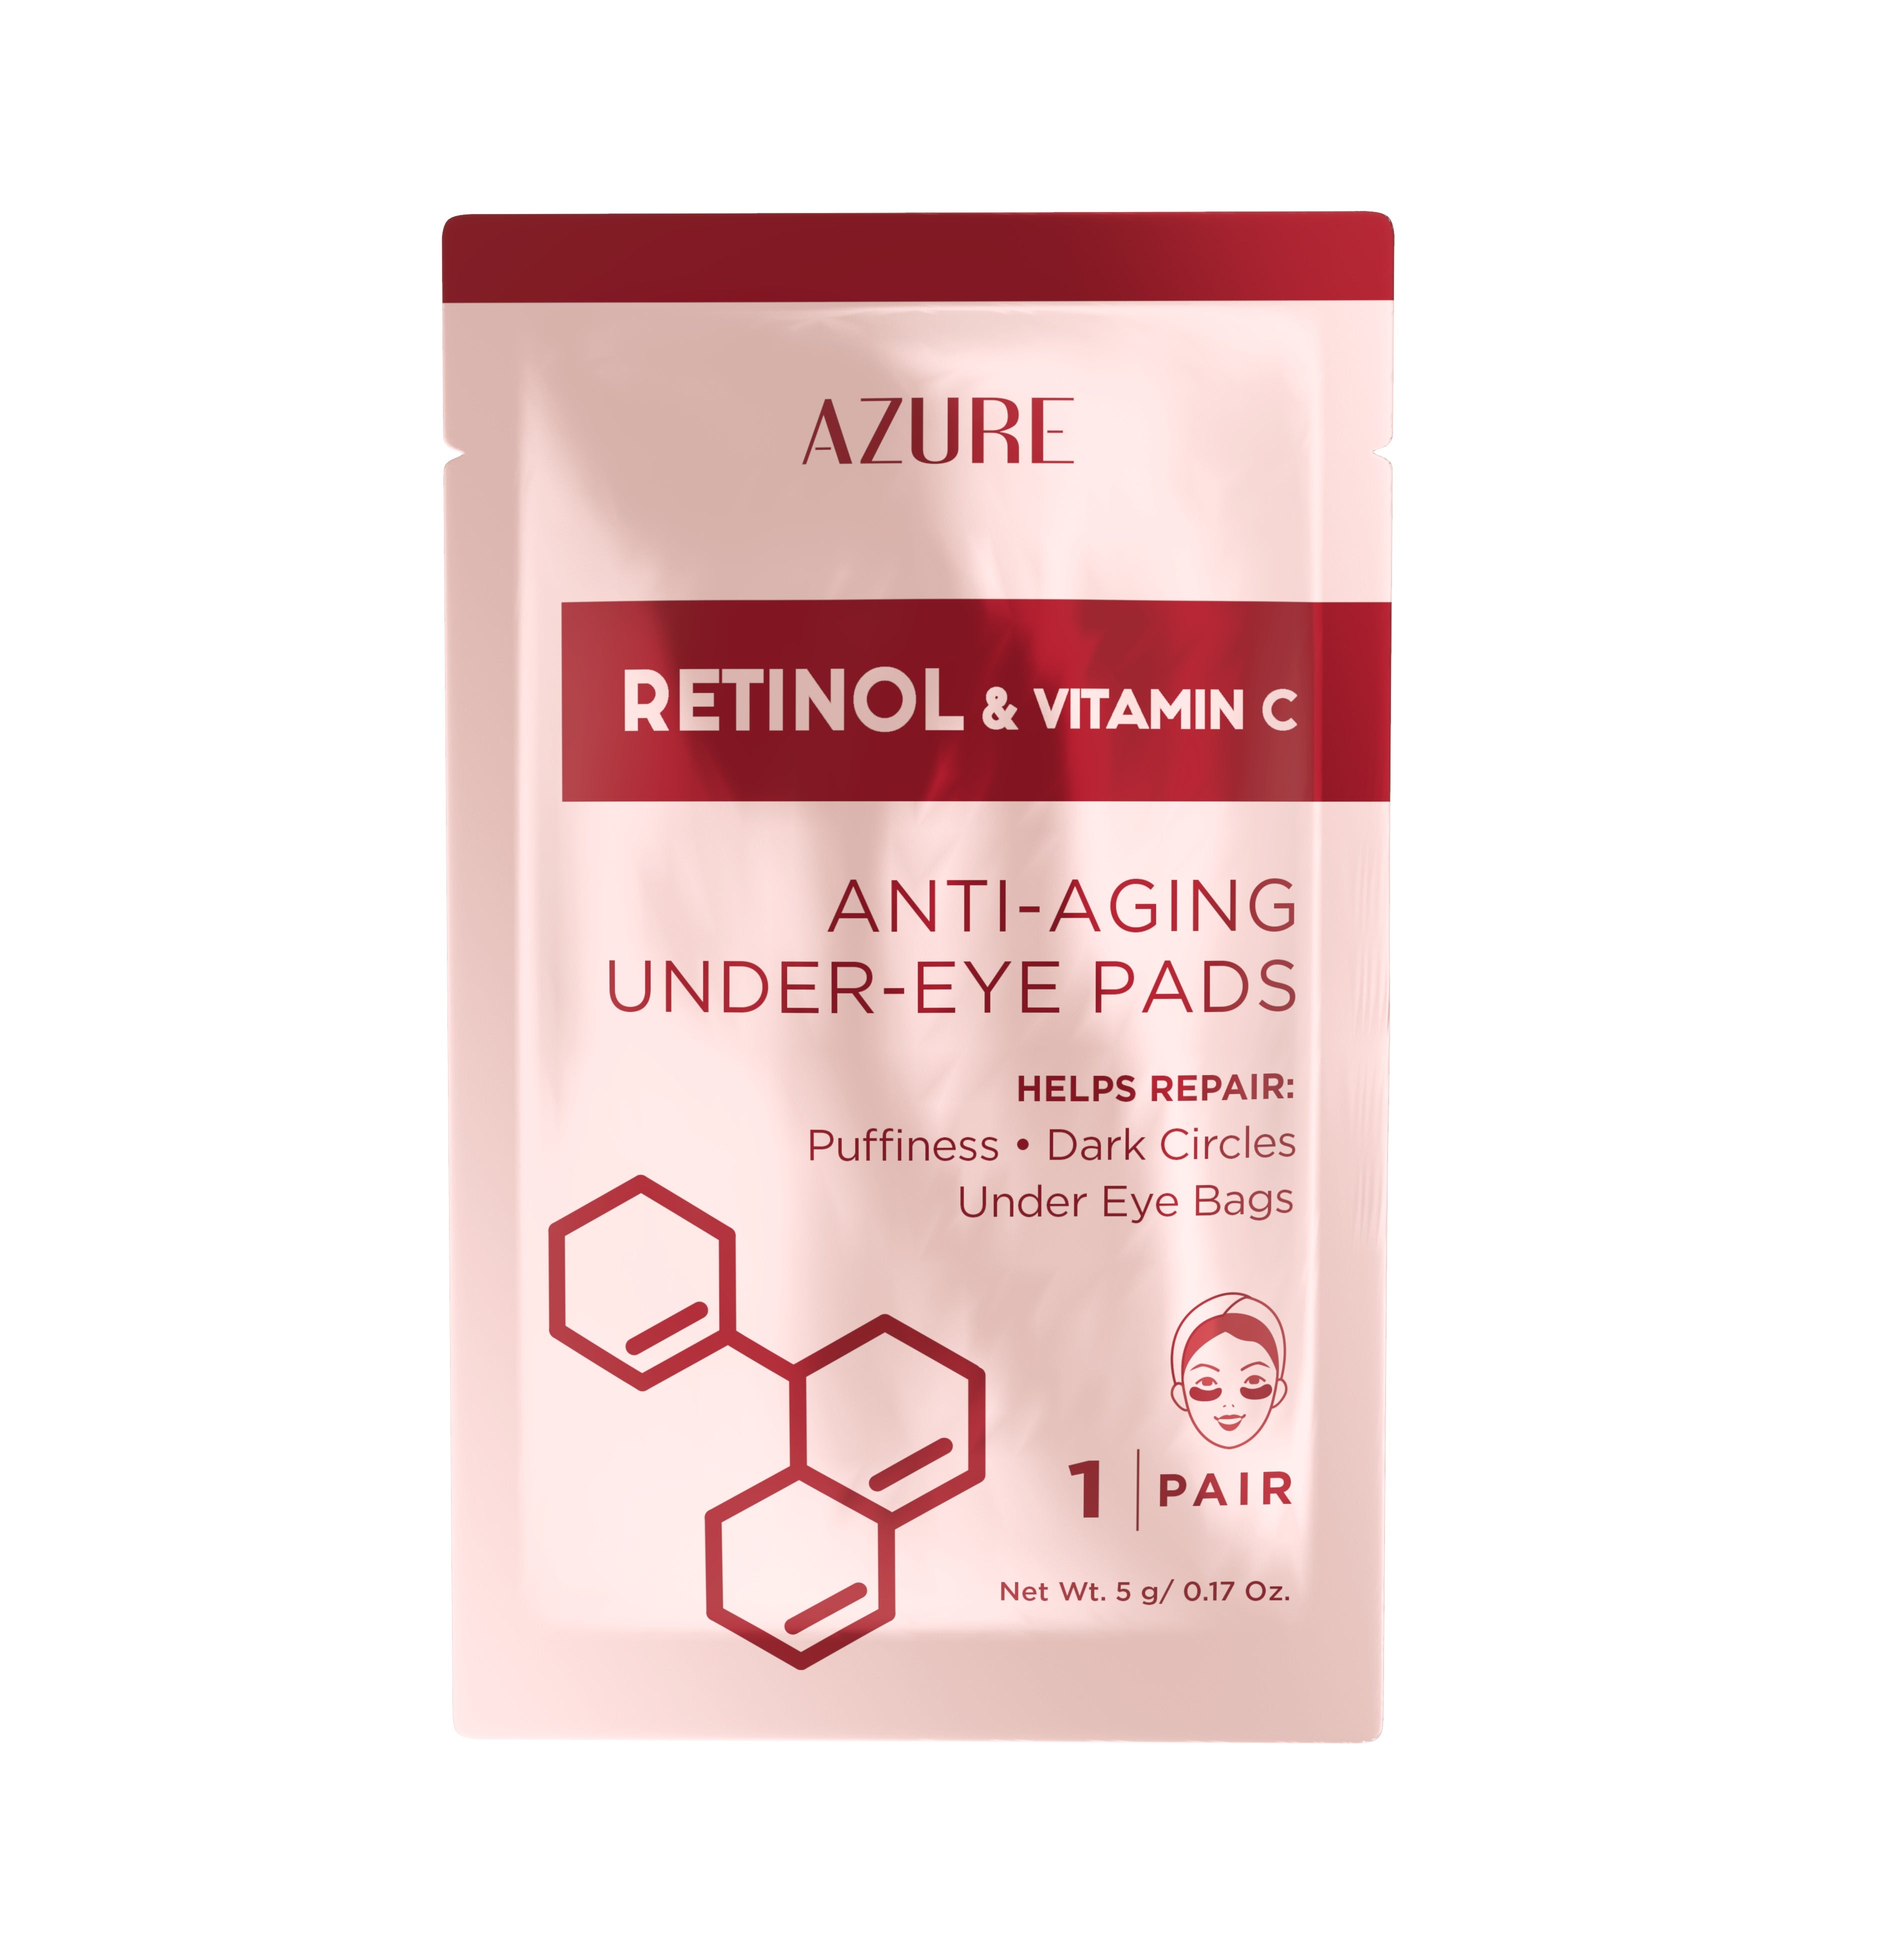 Retinol & Vitamin C Anti-Aging Under Eye Pads: 5 Pairs